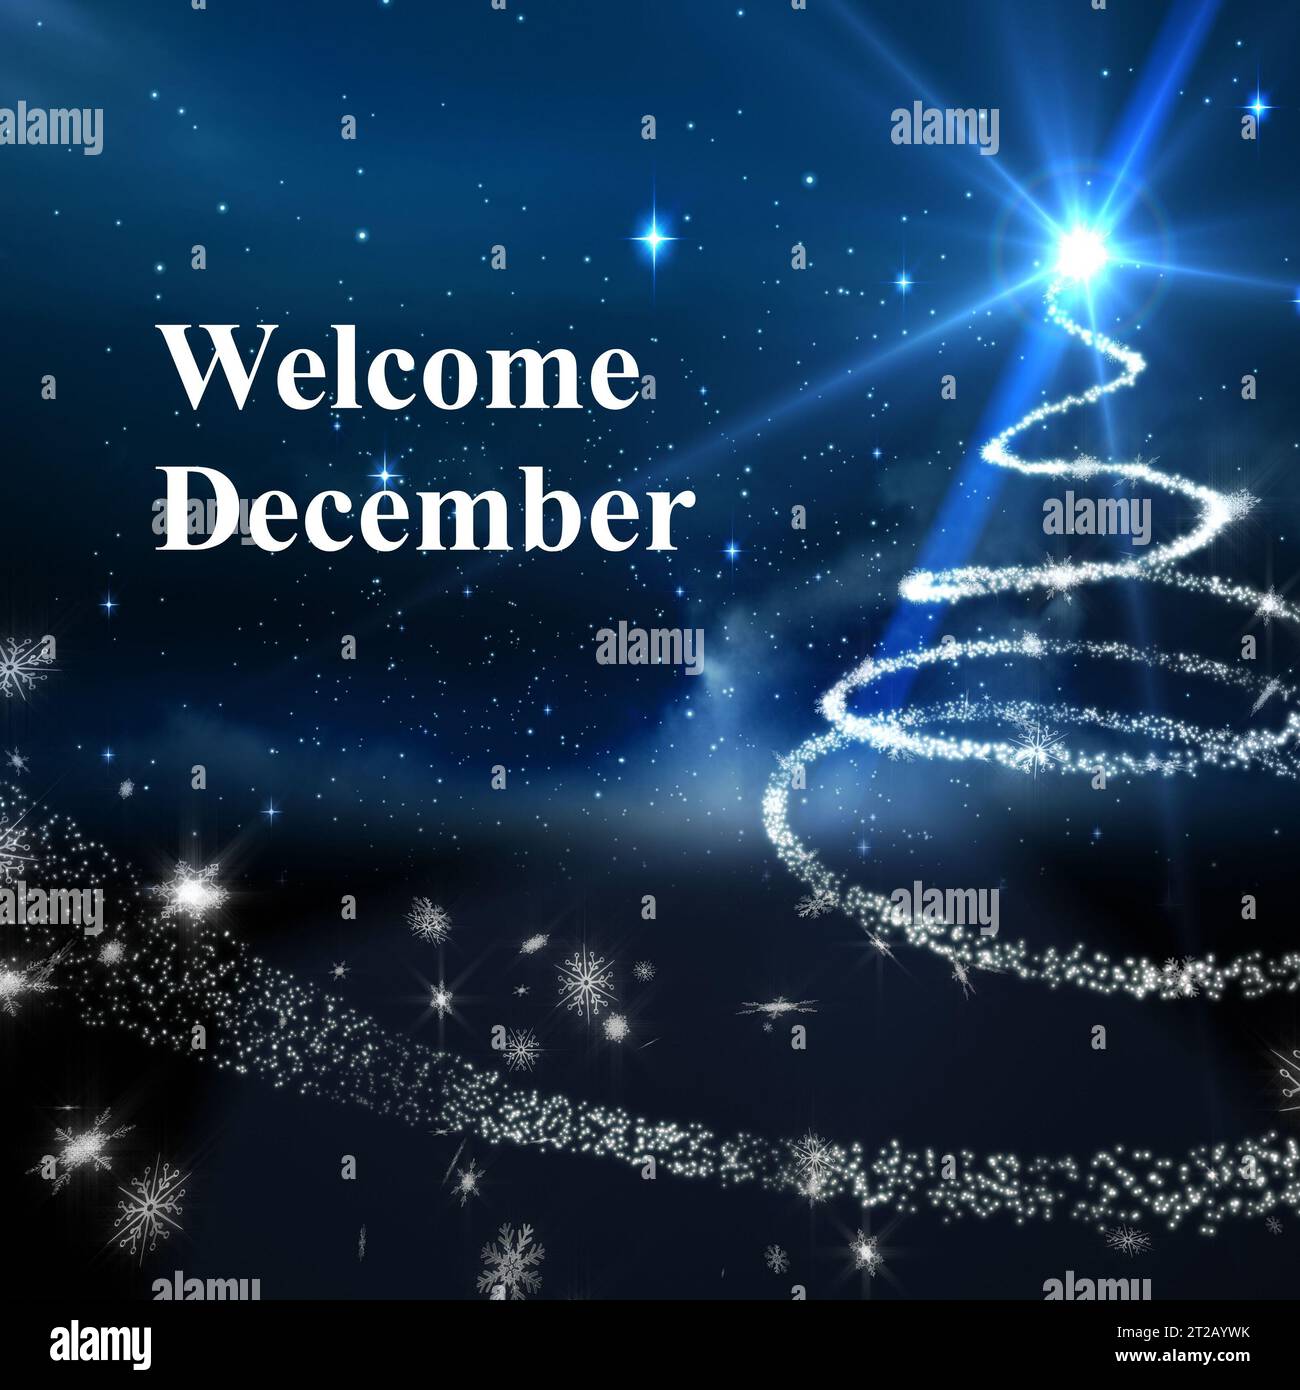 Texte de bienvenue de décembre au-dessus du ciel nocturne avec la forme d'un arbre de noël en forme d'étoile filante Banque D'Images